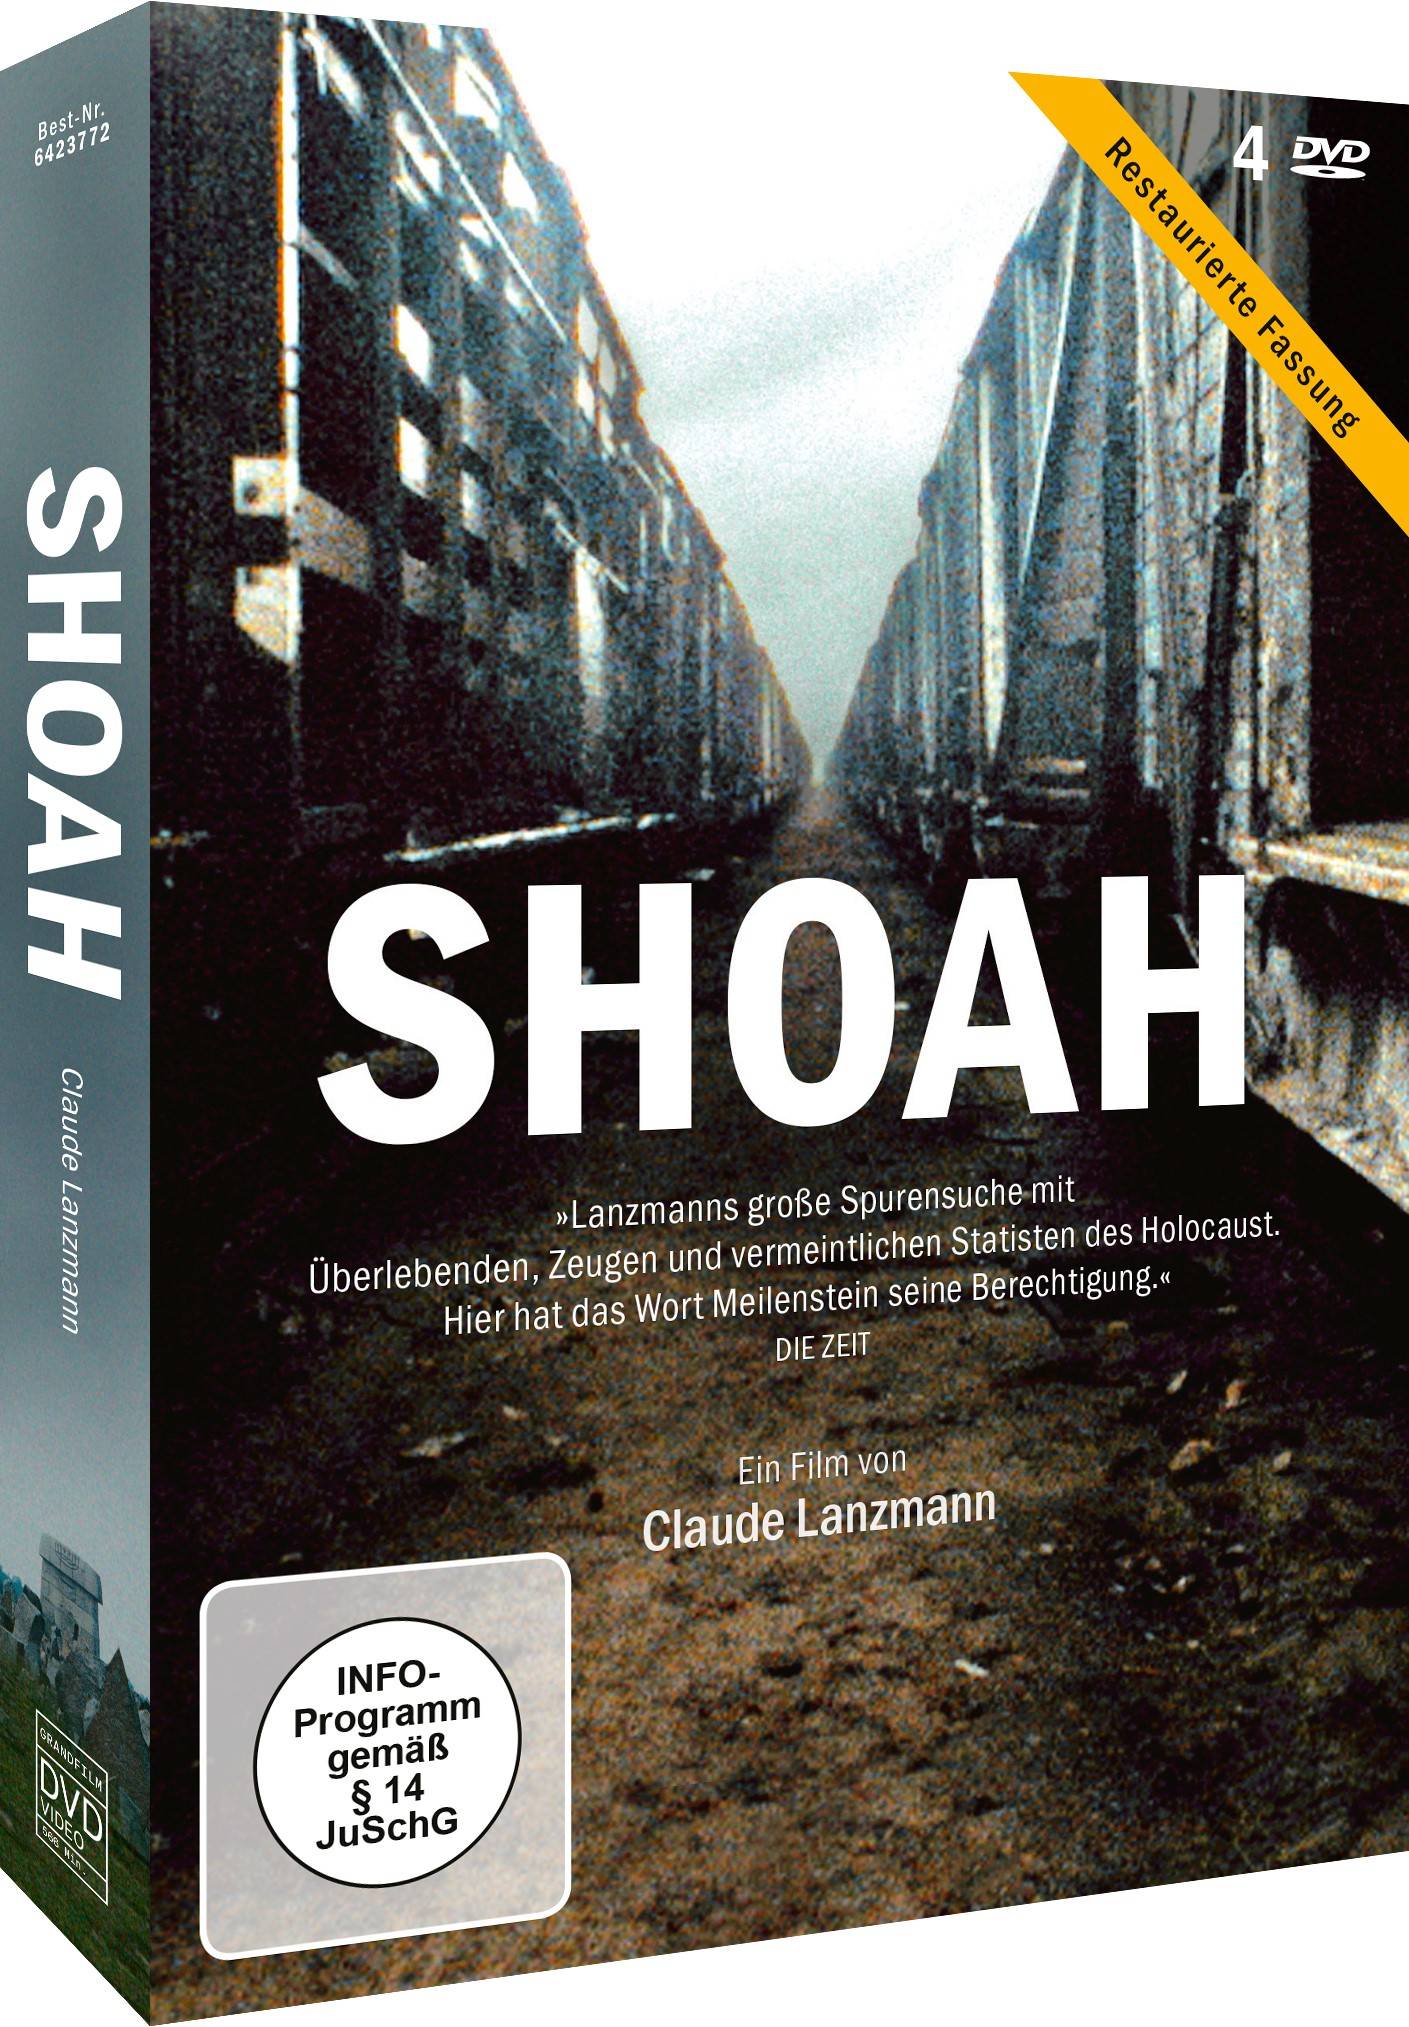 Shoah - Restaurierte Fassung (Neuauflage)